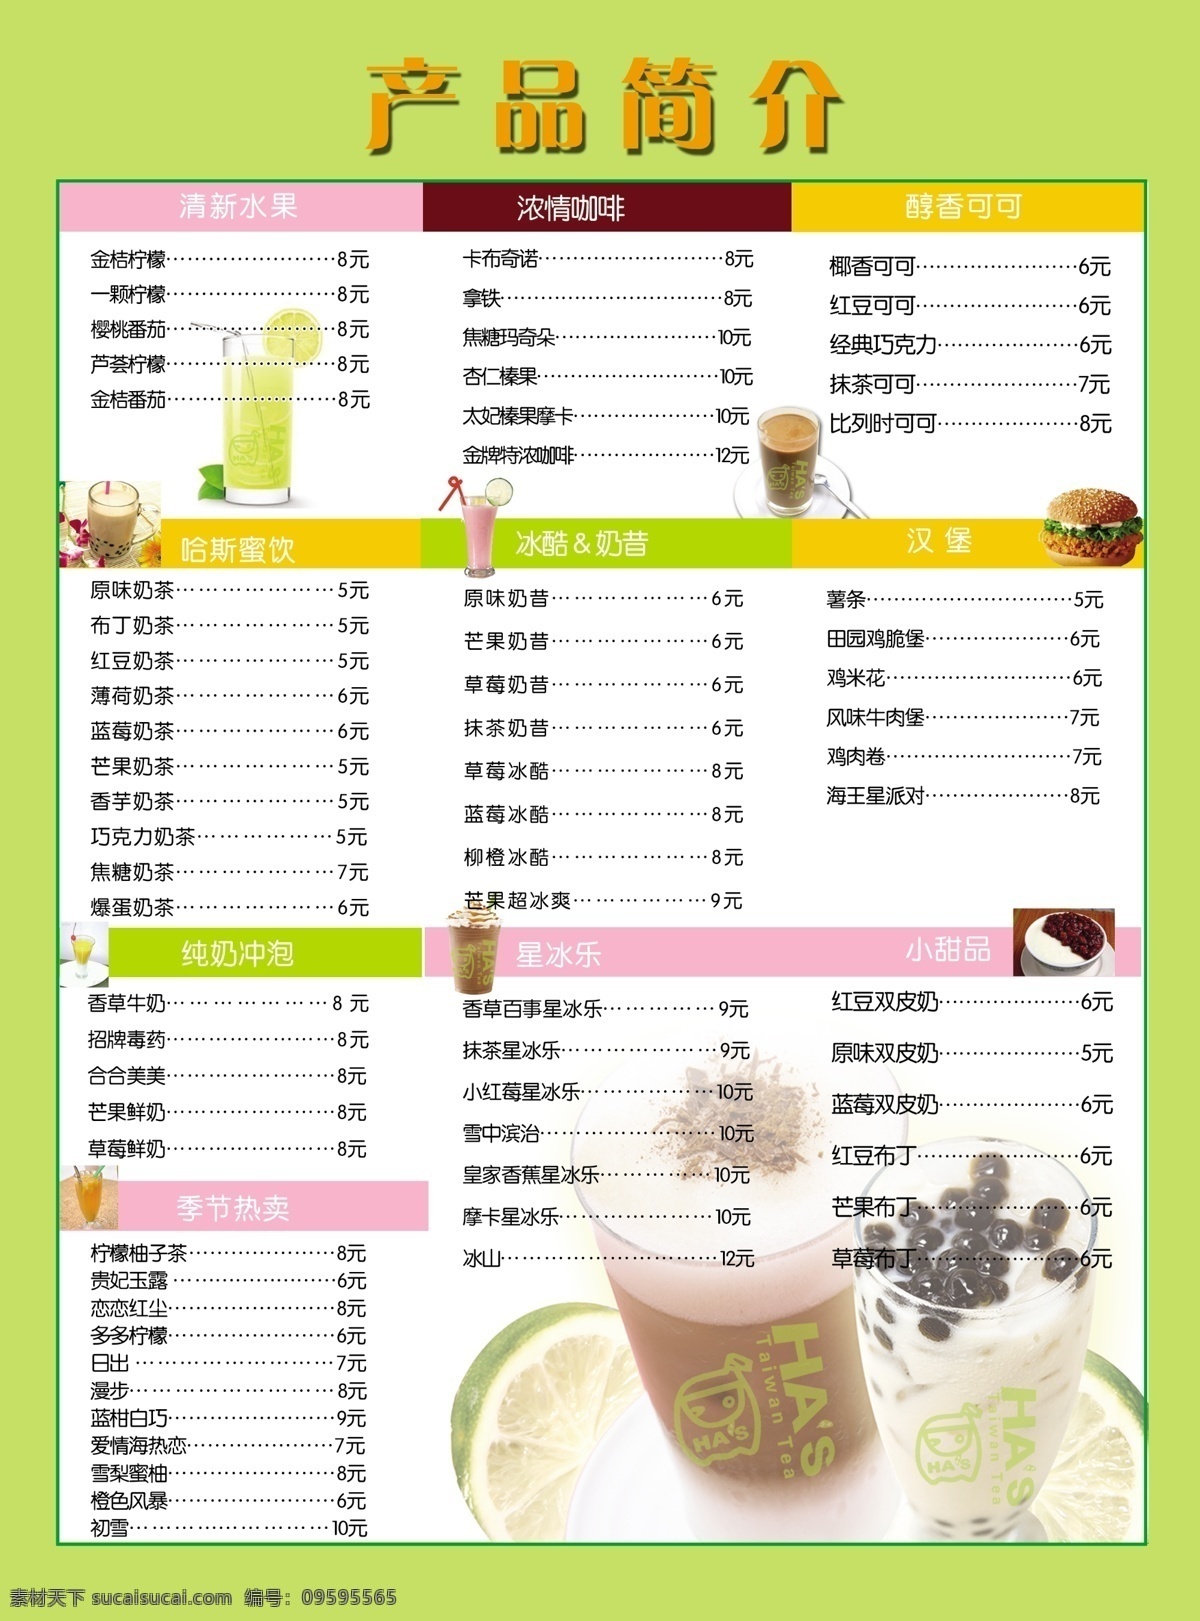 奶茶单页反面 奶茶单页 封面 价格表 奶茶 产品介绍 dm宣传单 白色